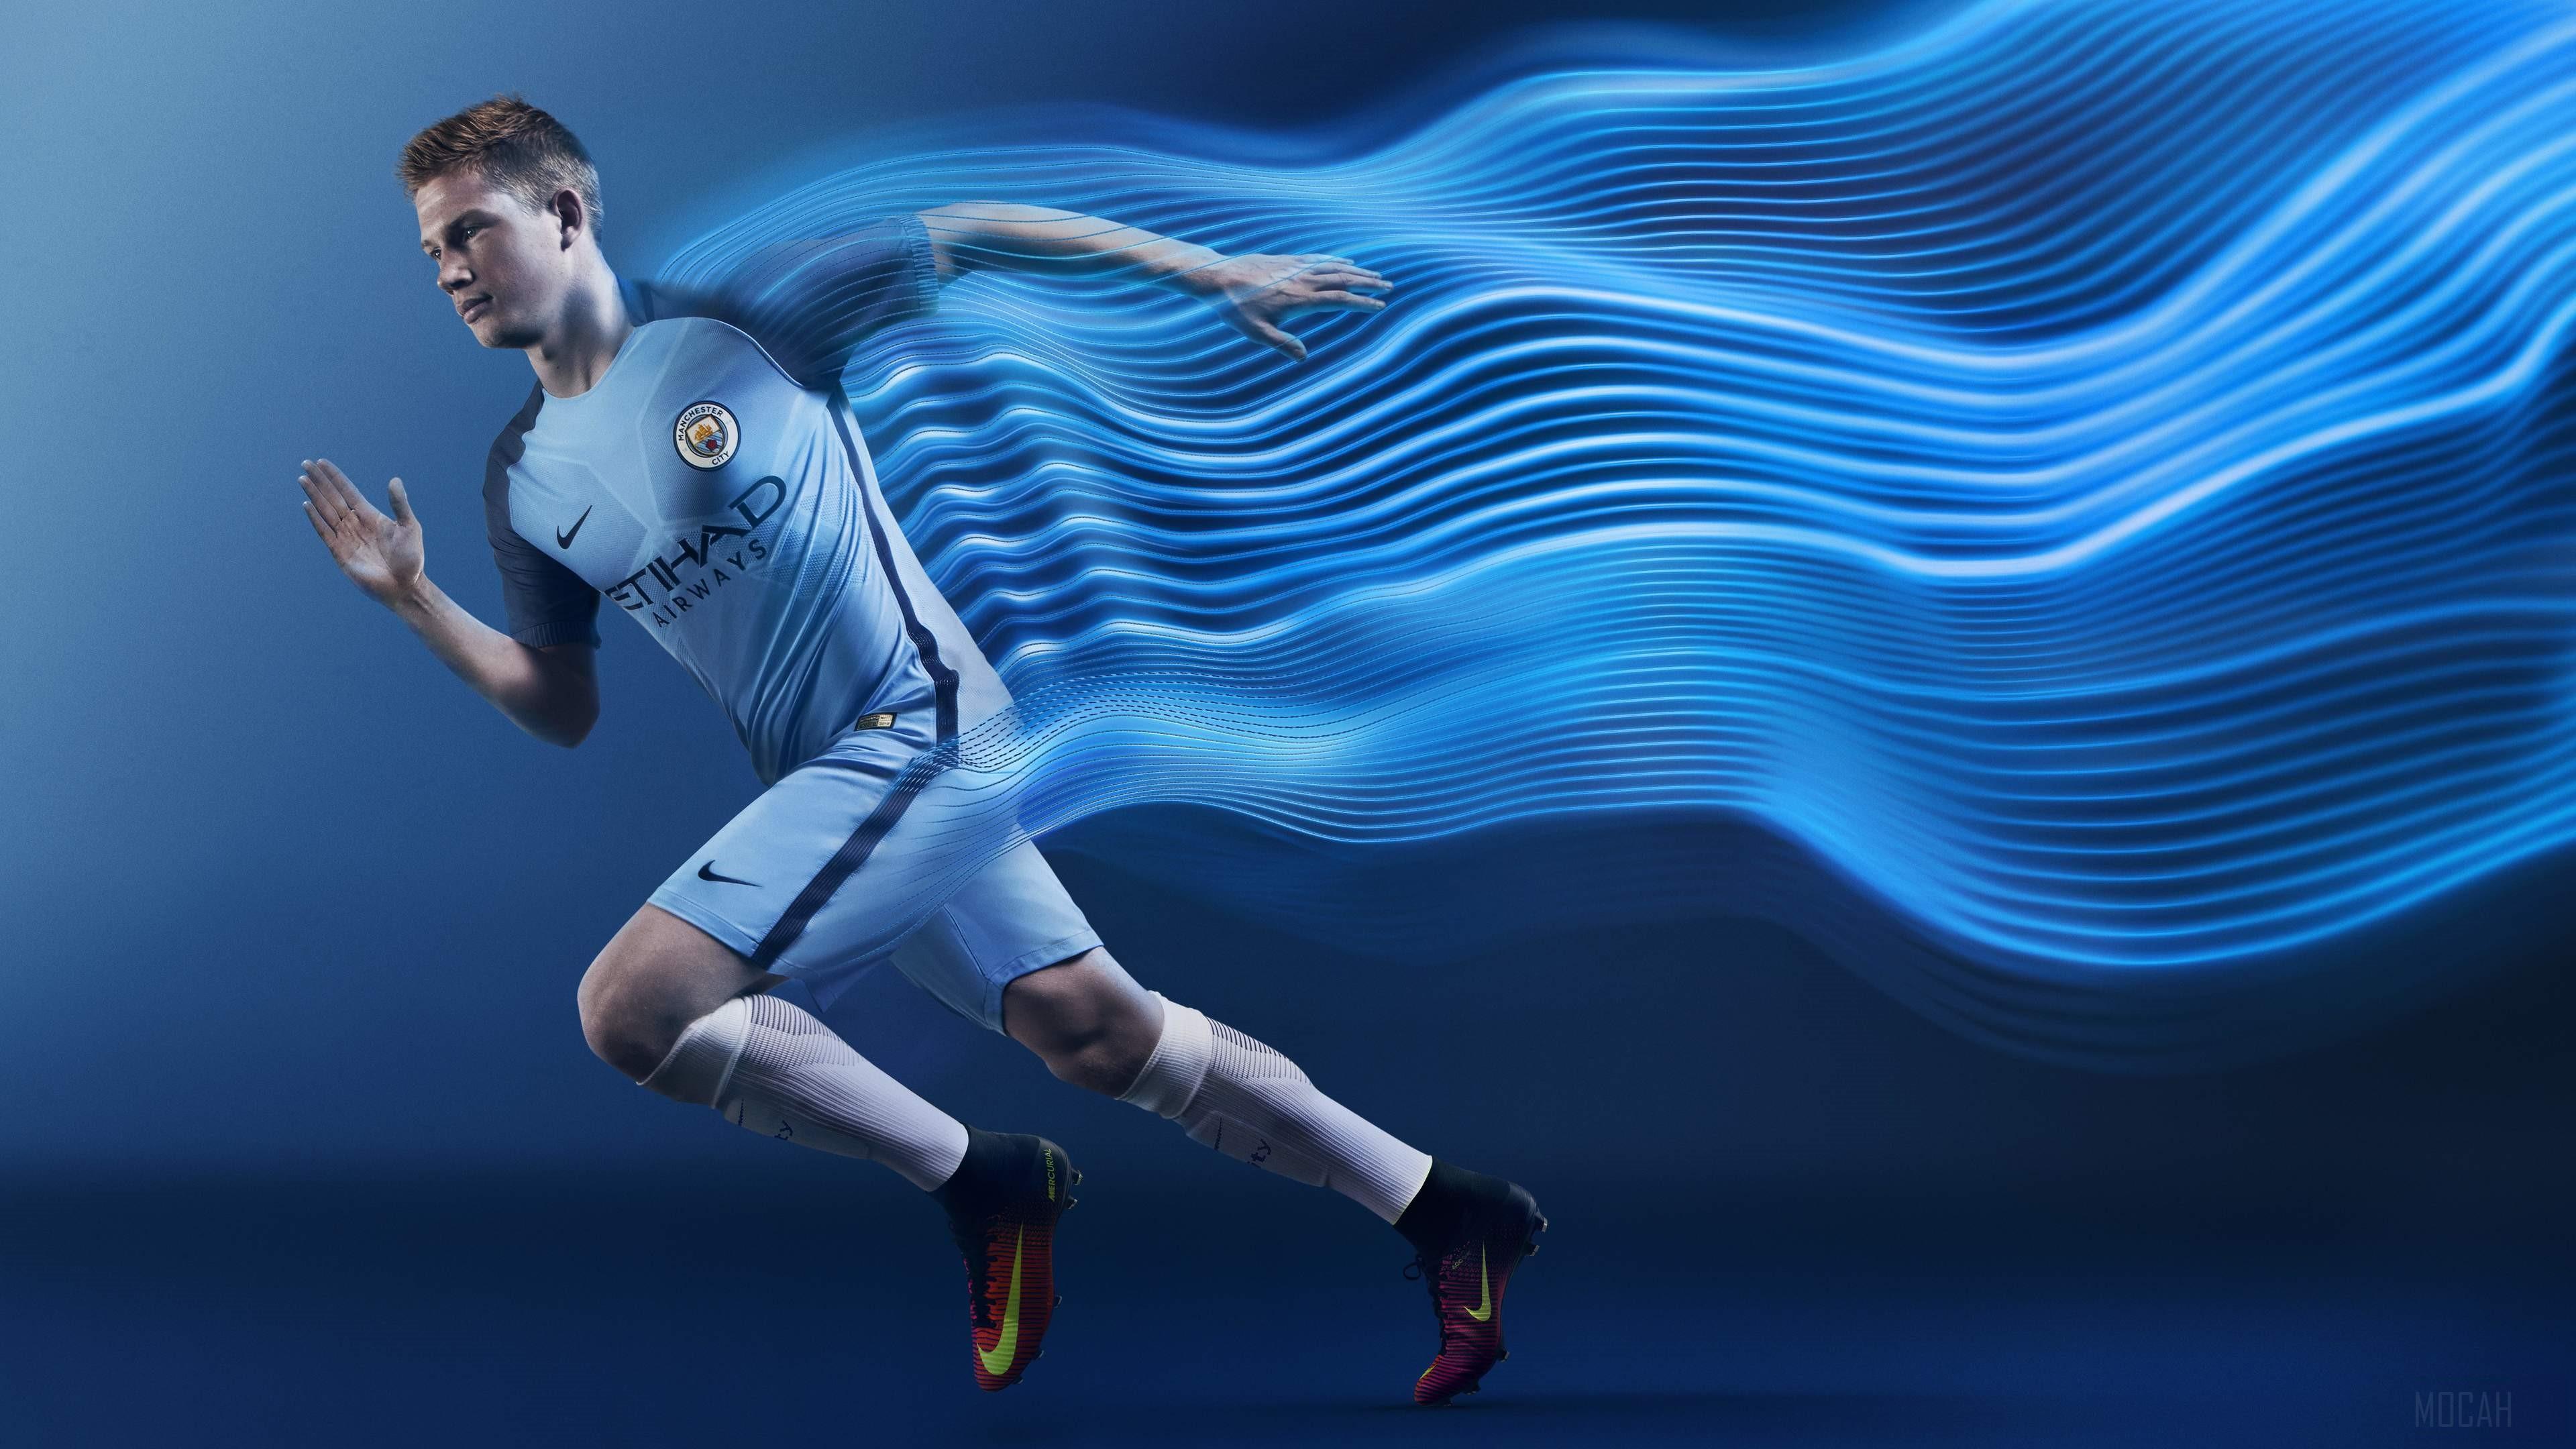 HD wallpaper, Manchester City Football Player 4K